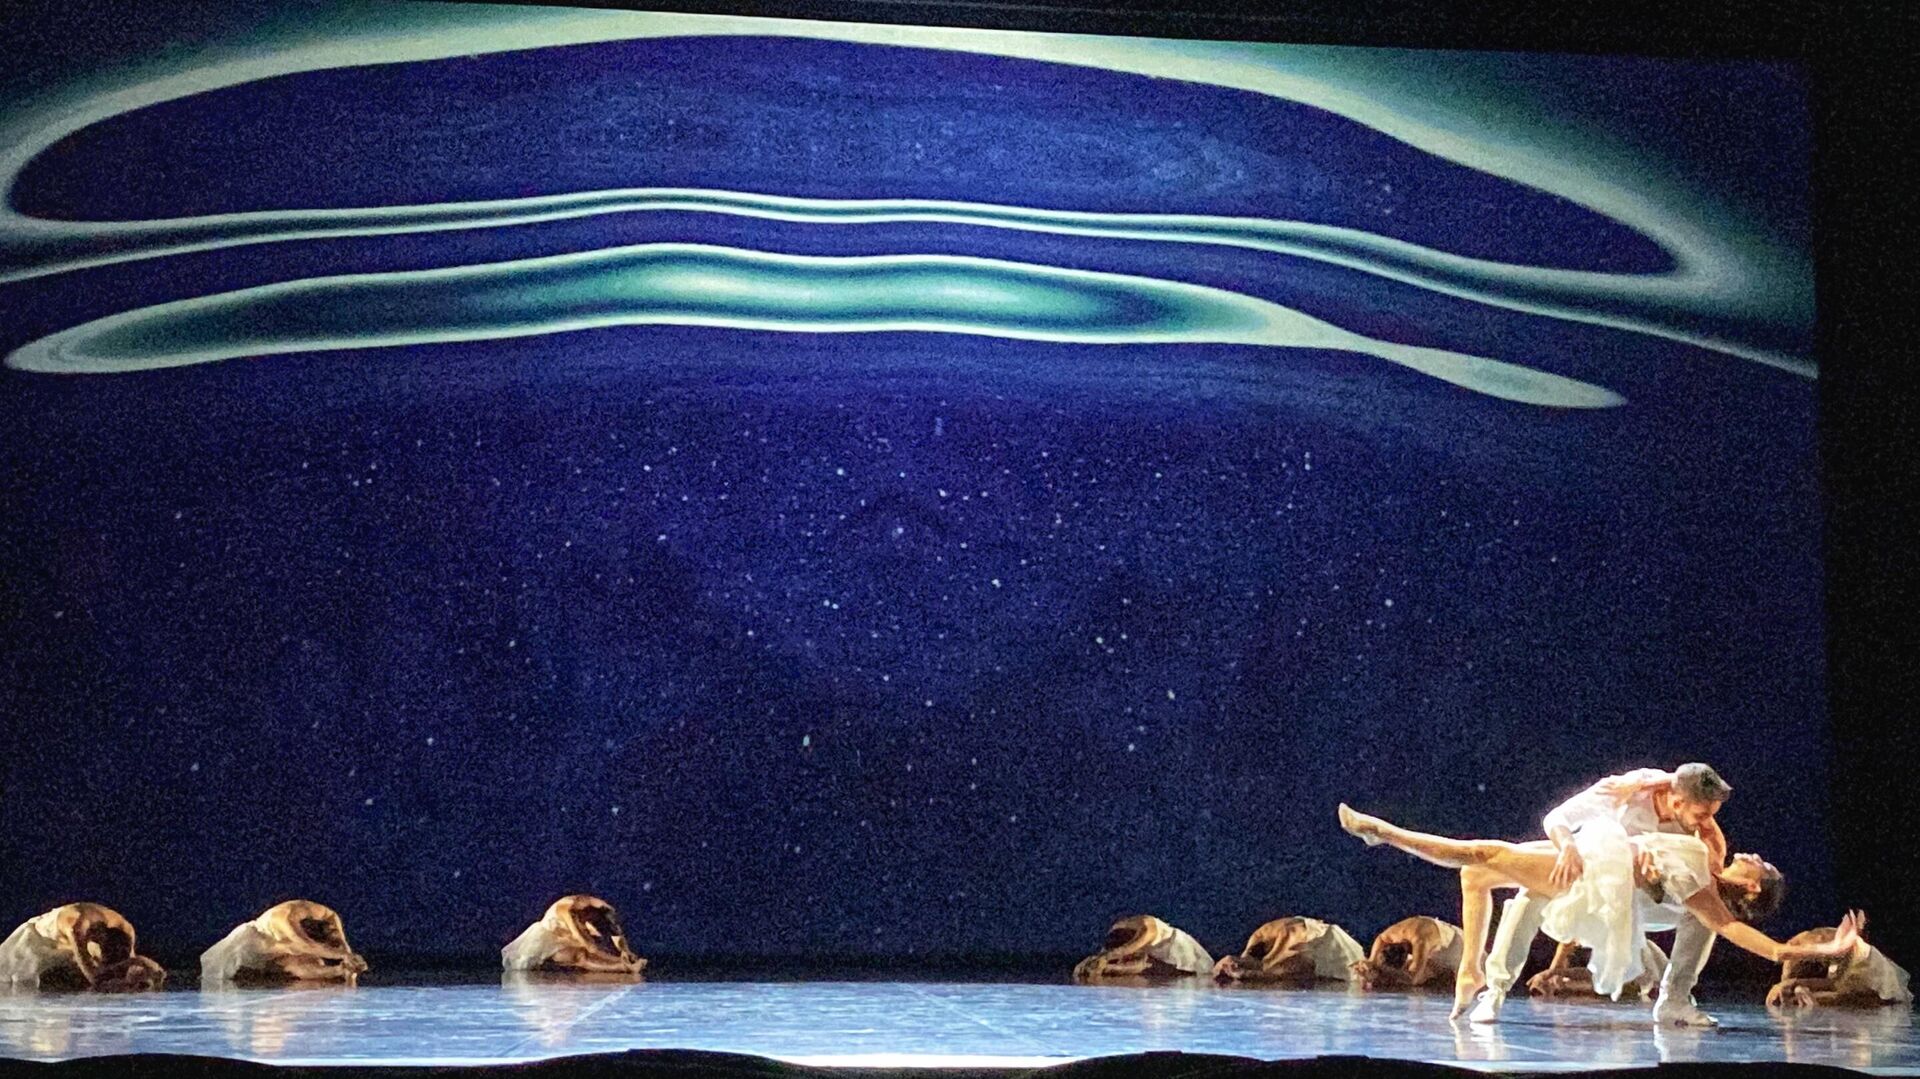 El ballet 'El lago de los cisnes' de Angelin Preljocaj - Sputnik Mundo, 1920, 17.11.2021